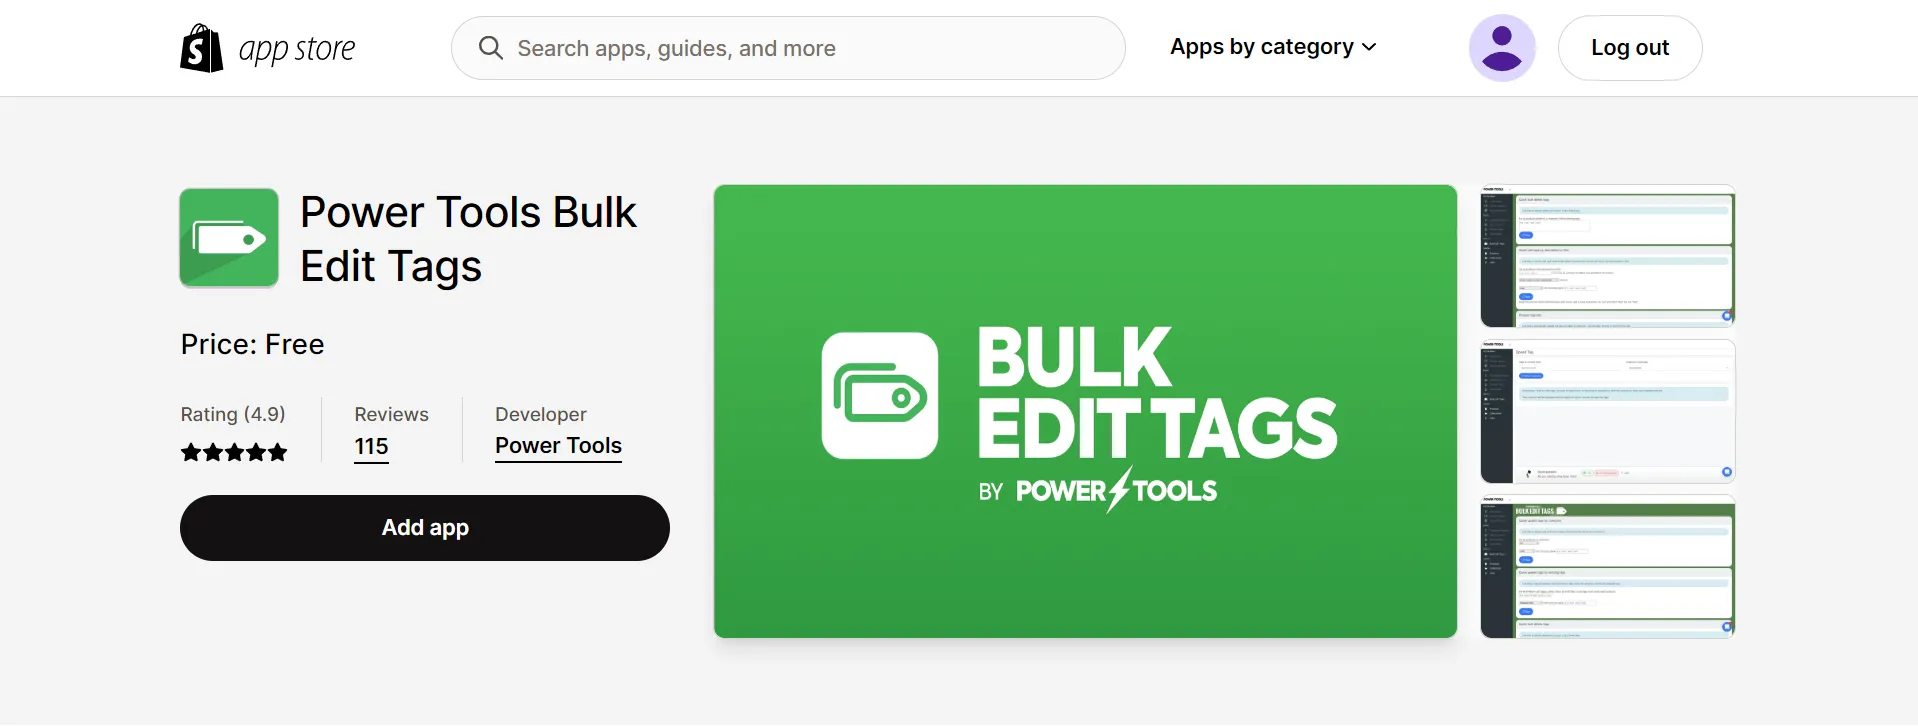 Power tools bulk edit tags app